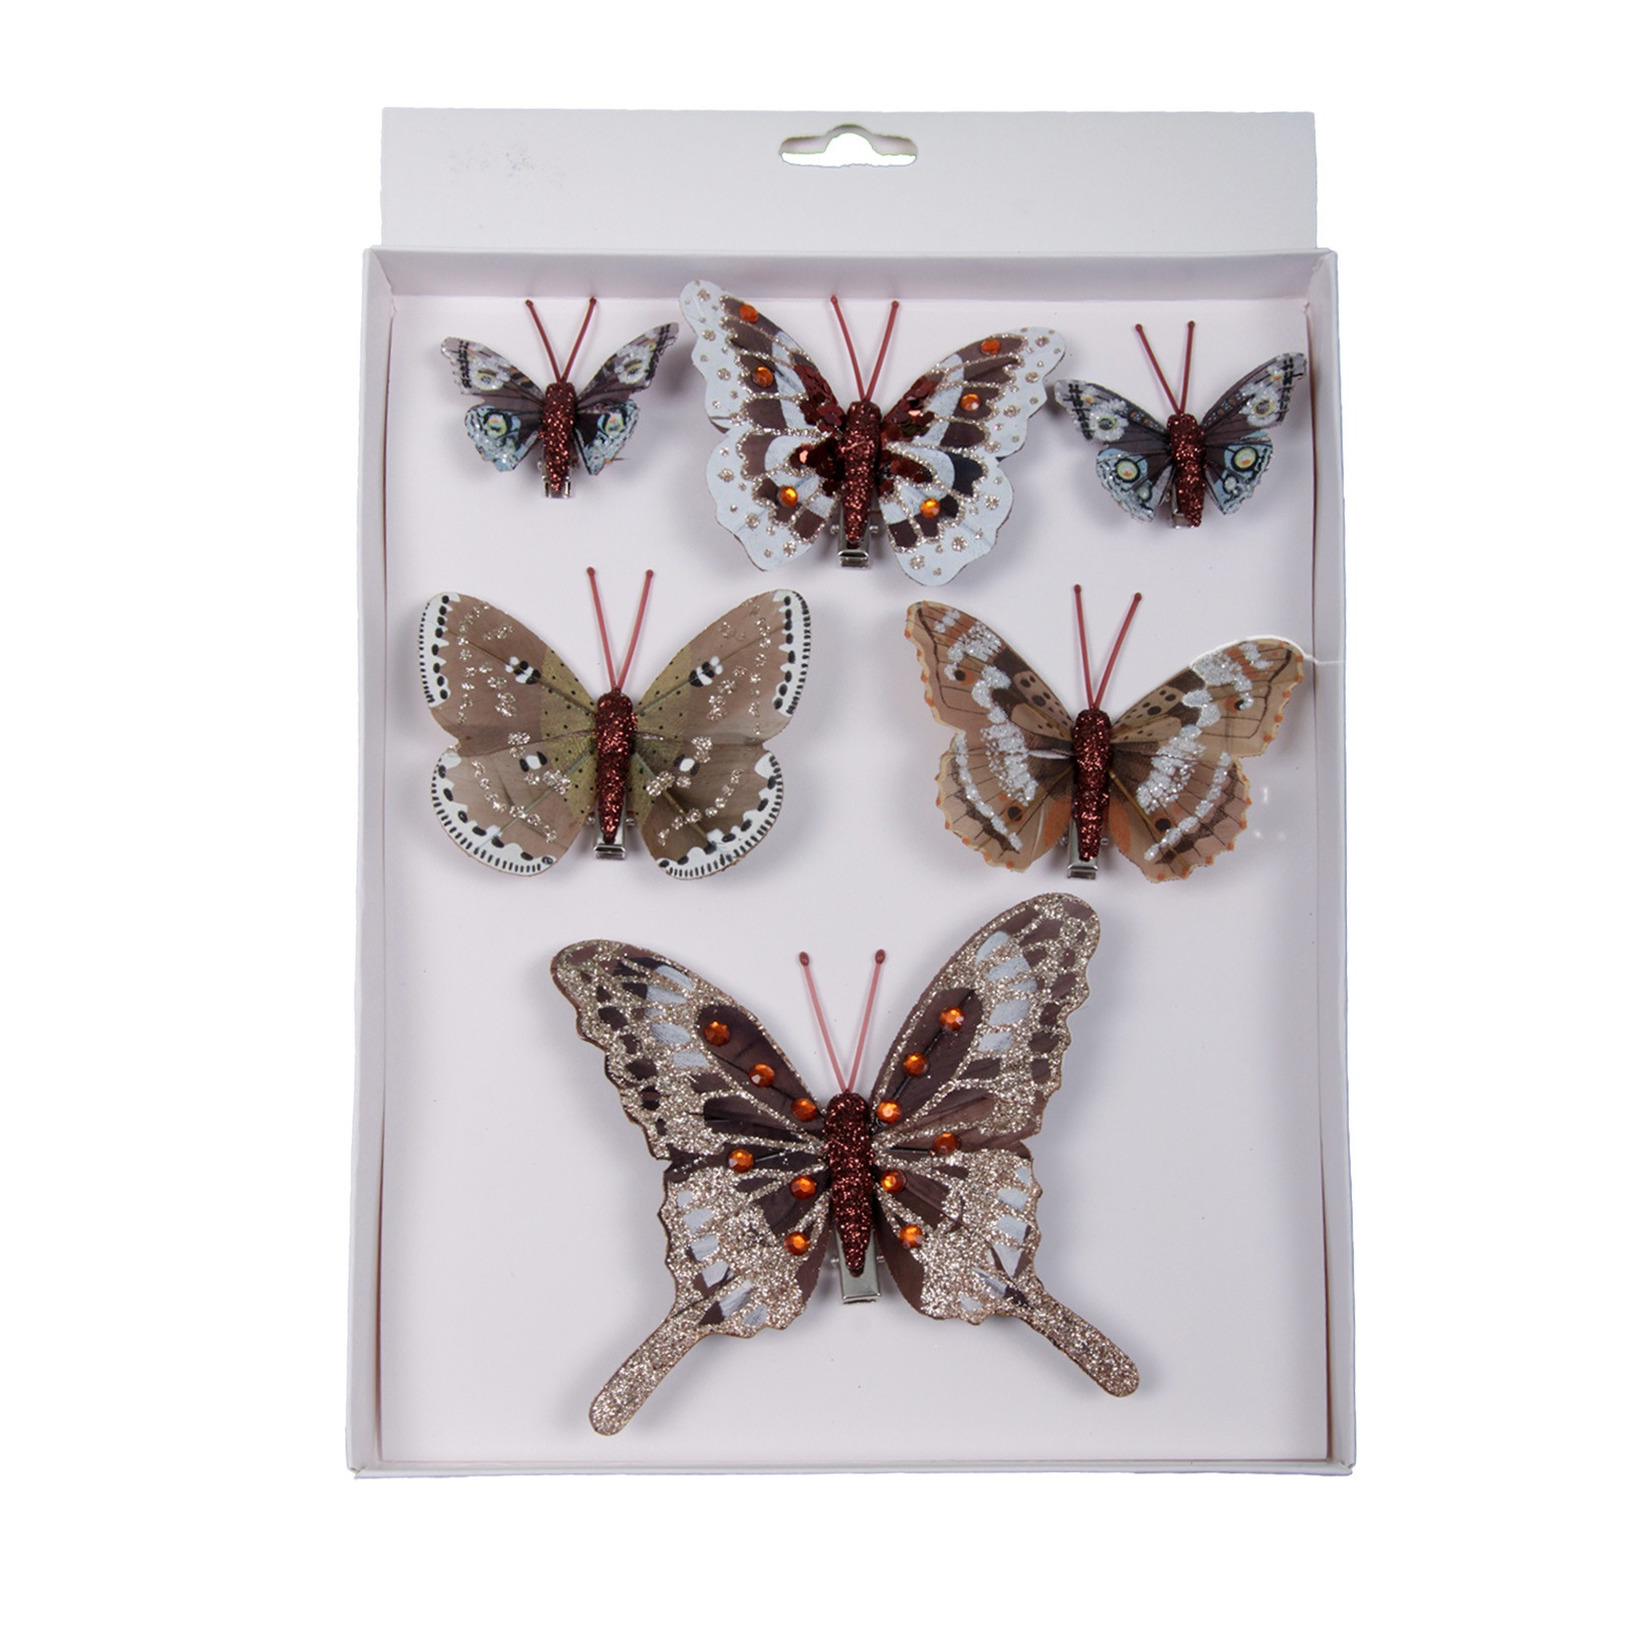 6x stuks decoratie vlinders op clip natuurlijke tinten 5, 8 en 12 cm